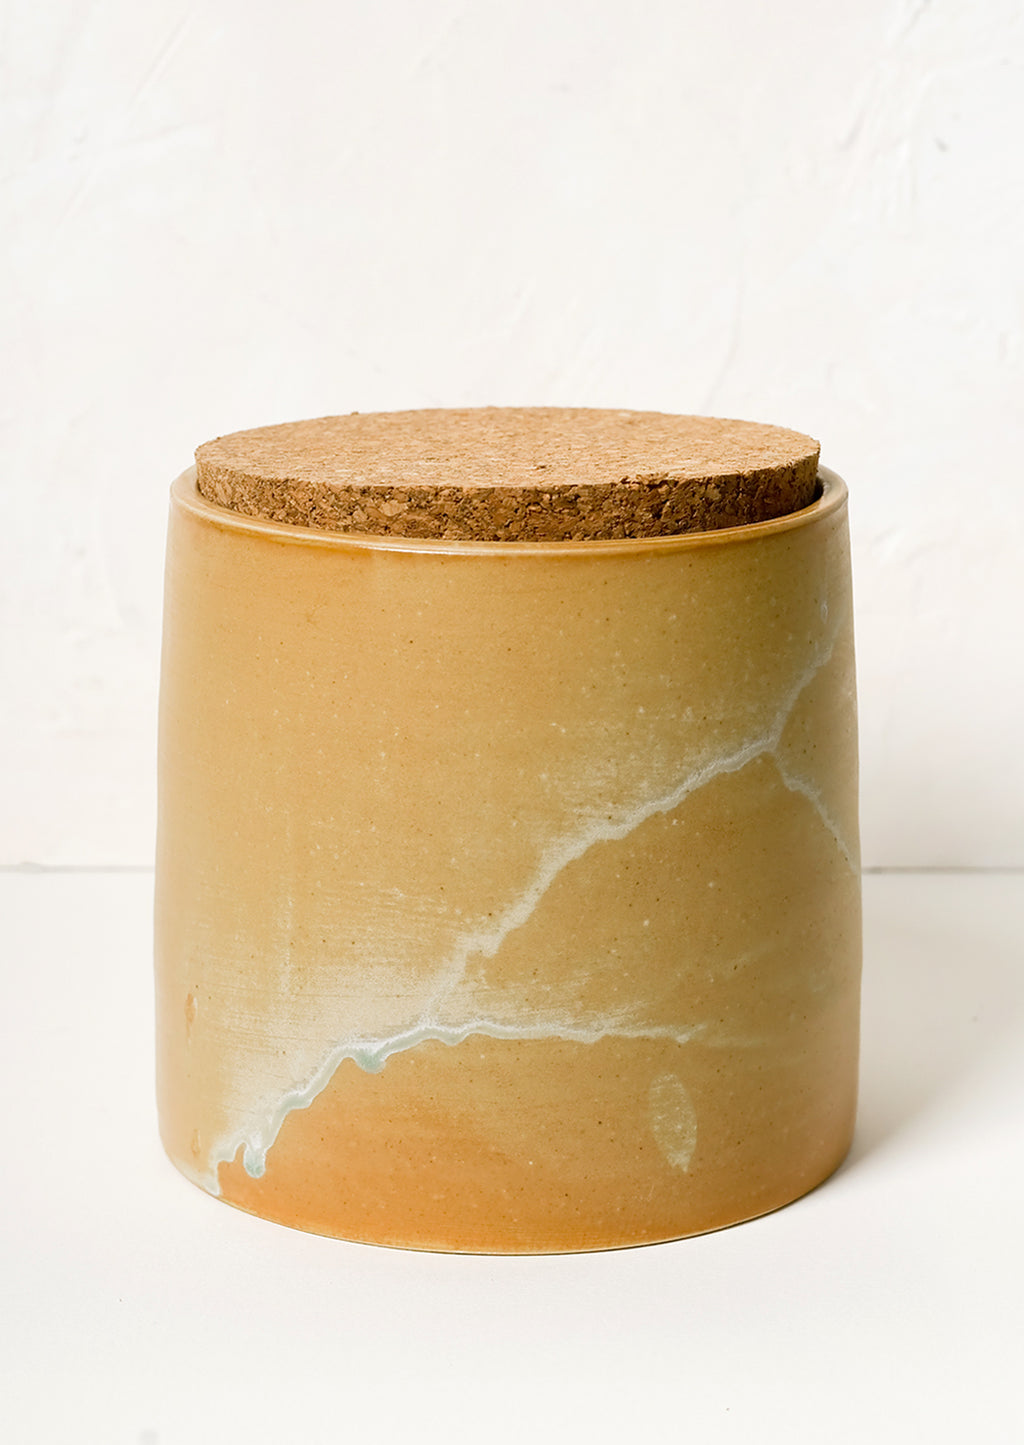 1: A ceramic storage jar in caramel glaze with cork lid.